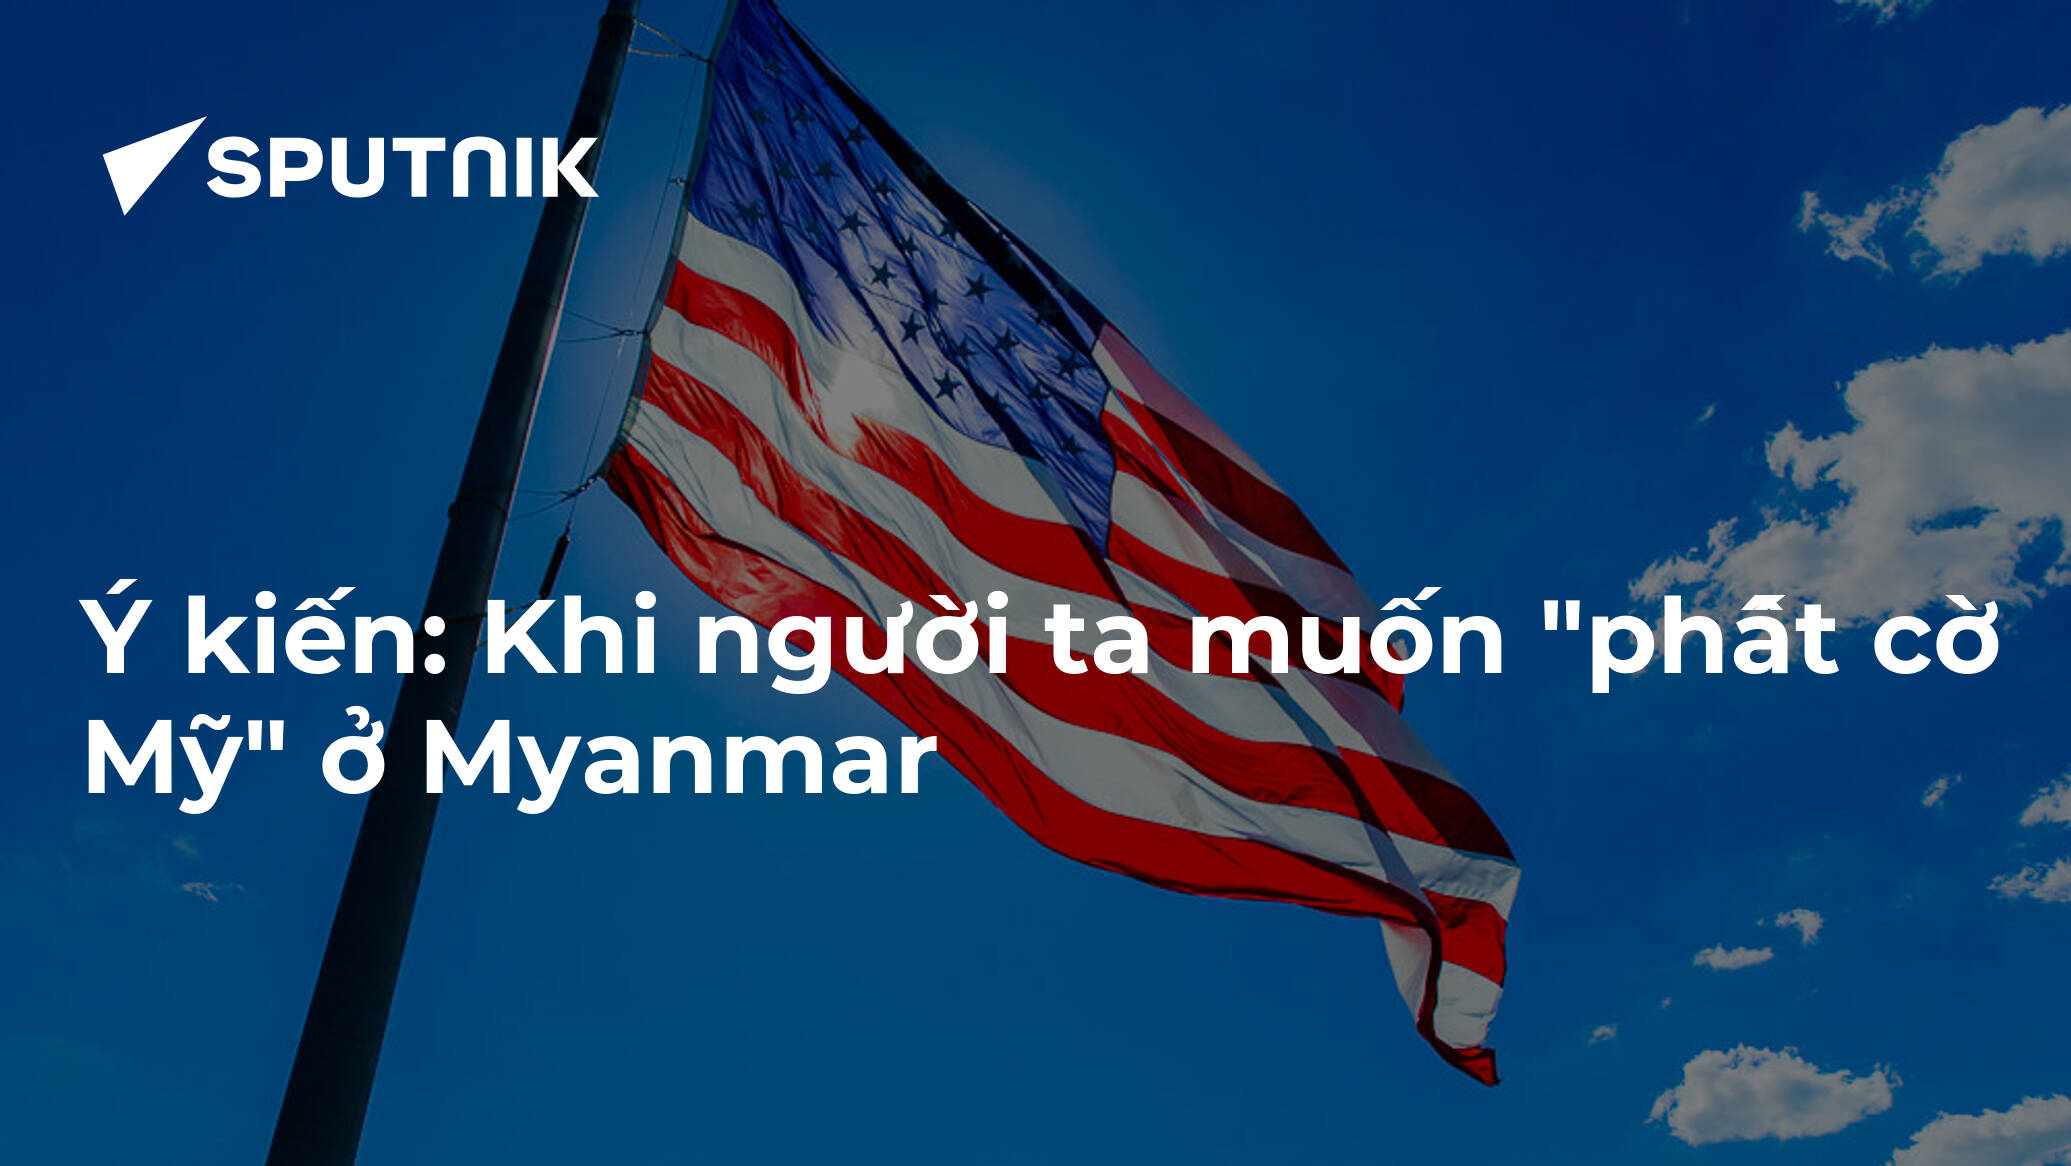 Phất cờ Mỹ trên đất Myanmar là biểu tượng của sự kết nối và hợp tác giữa hai nước. Hãy xem hình ảnh liên quan để đón nhận nhiều thông tin cập nhật về sự phát triển của quan hệ đối tác Mỹ - Myanmar và những điều mới lạ về đất nước Myanmar.